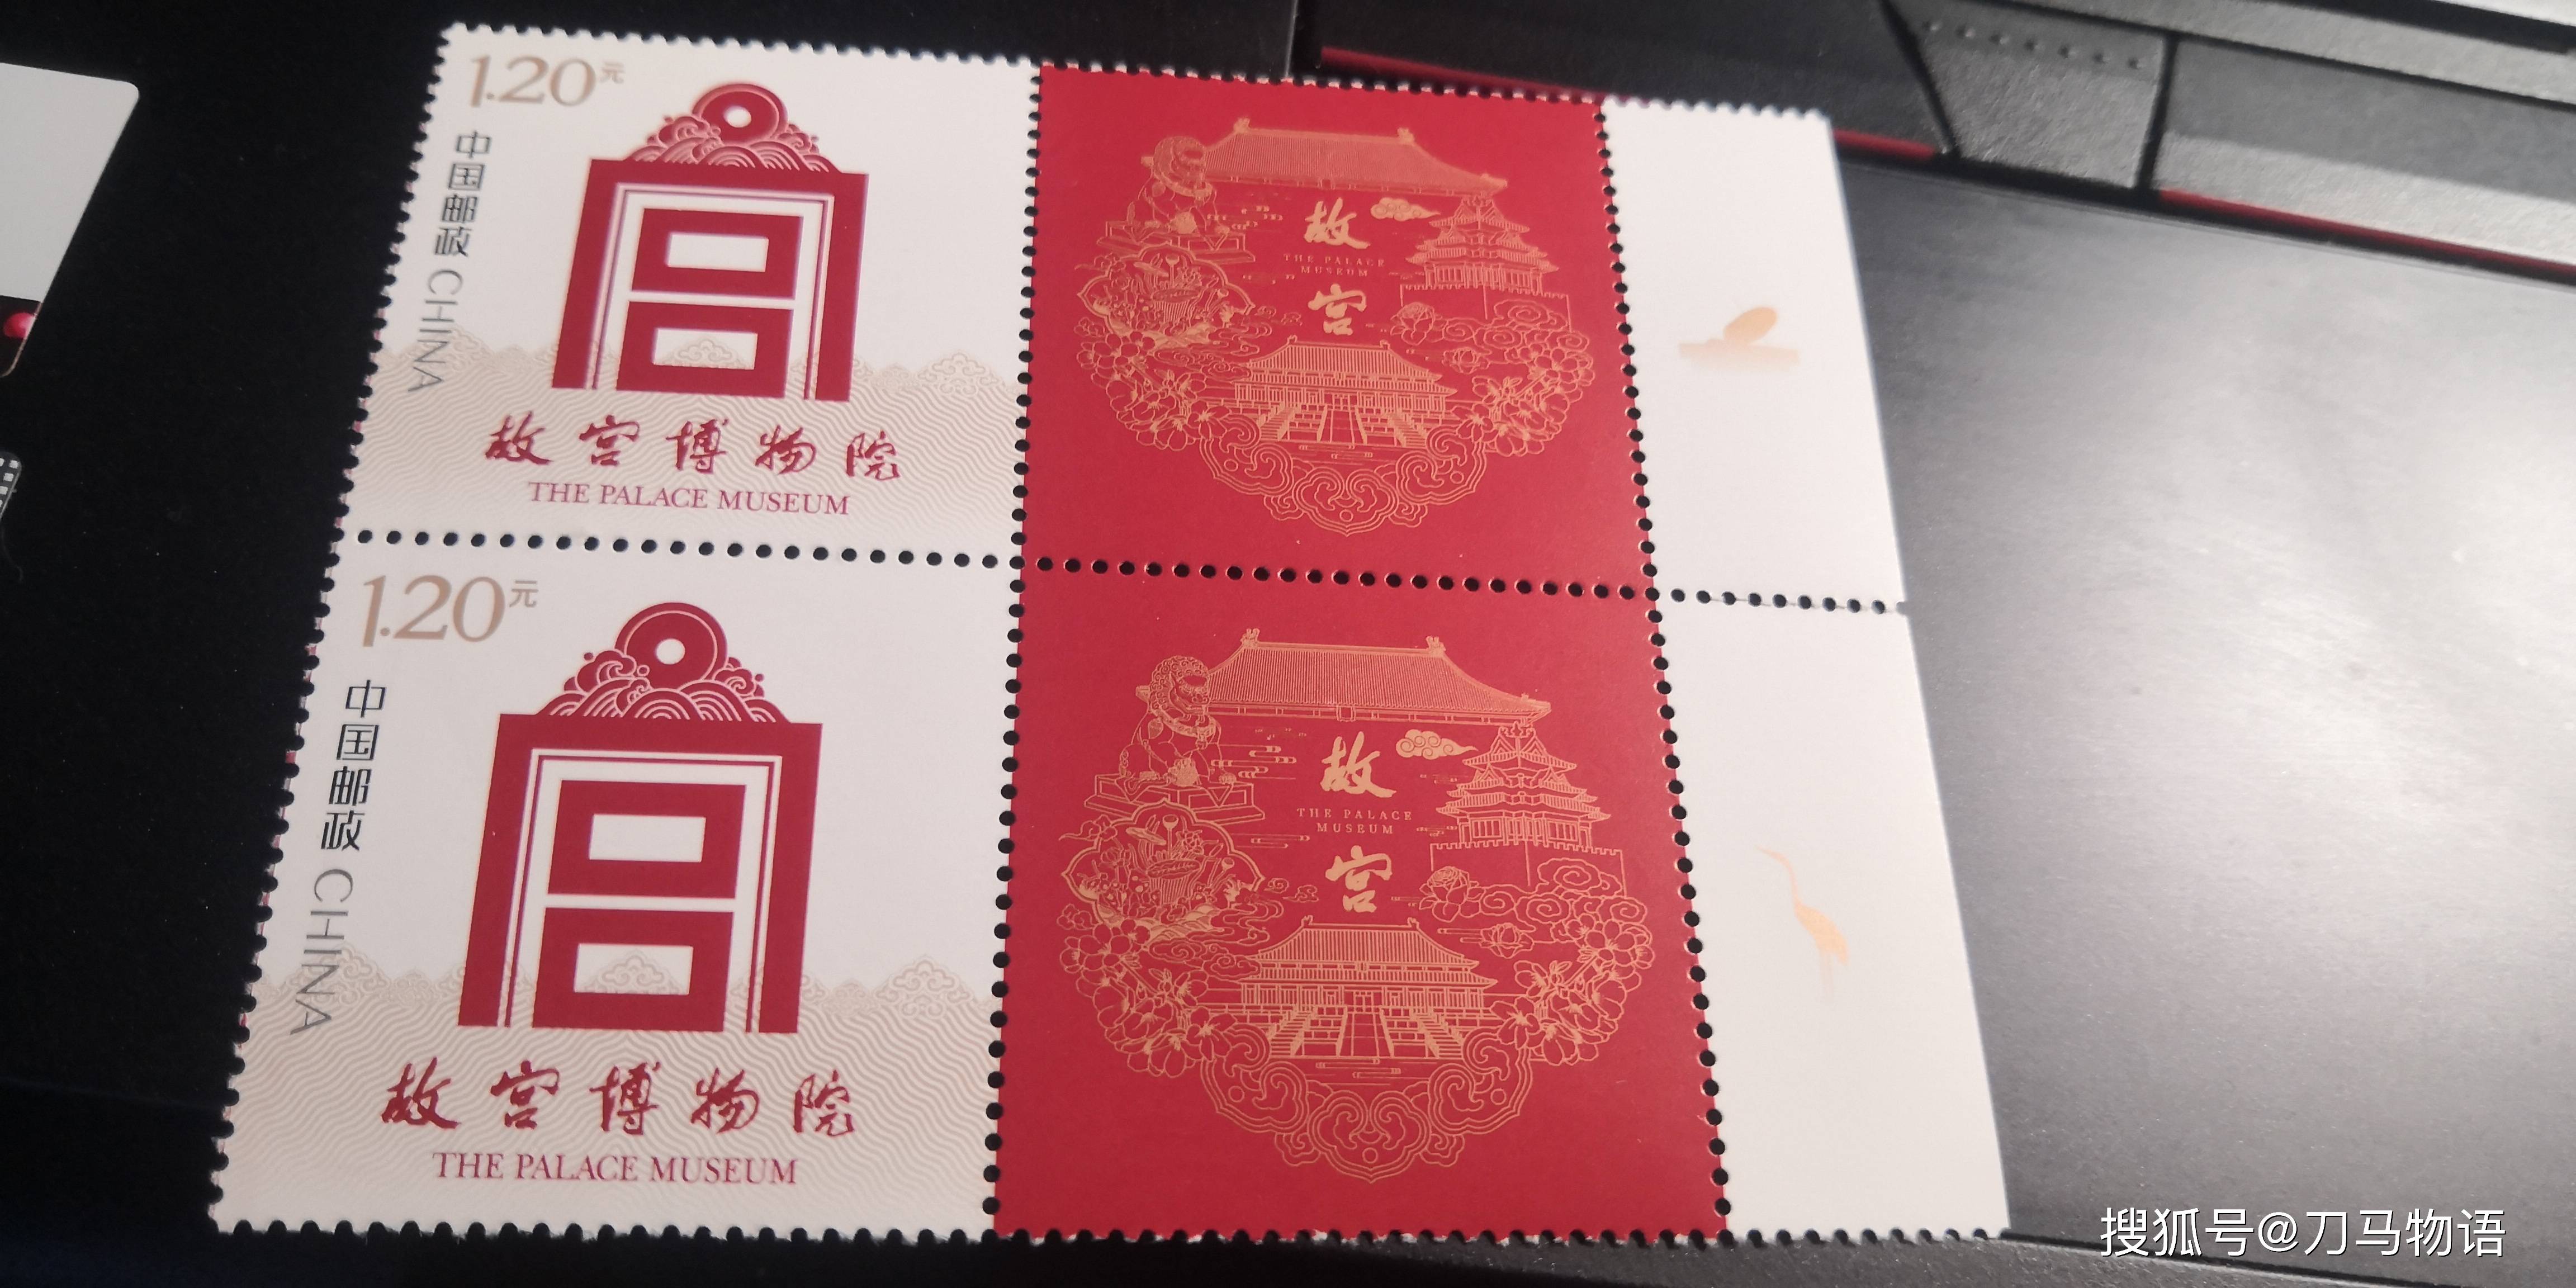 苹果故宫纪念版:2023年的个性化邮票要陡增吗？